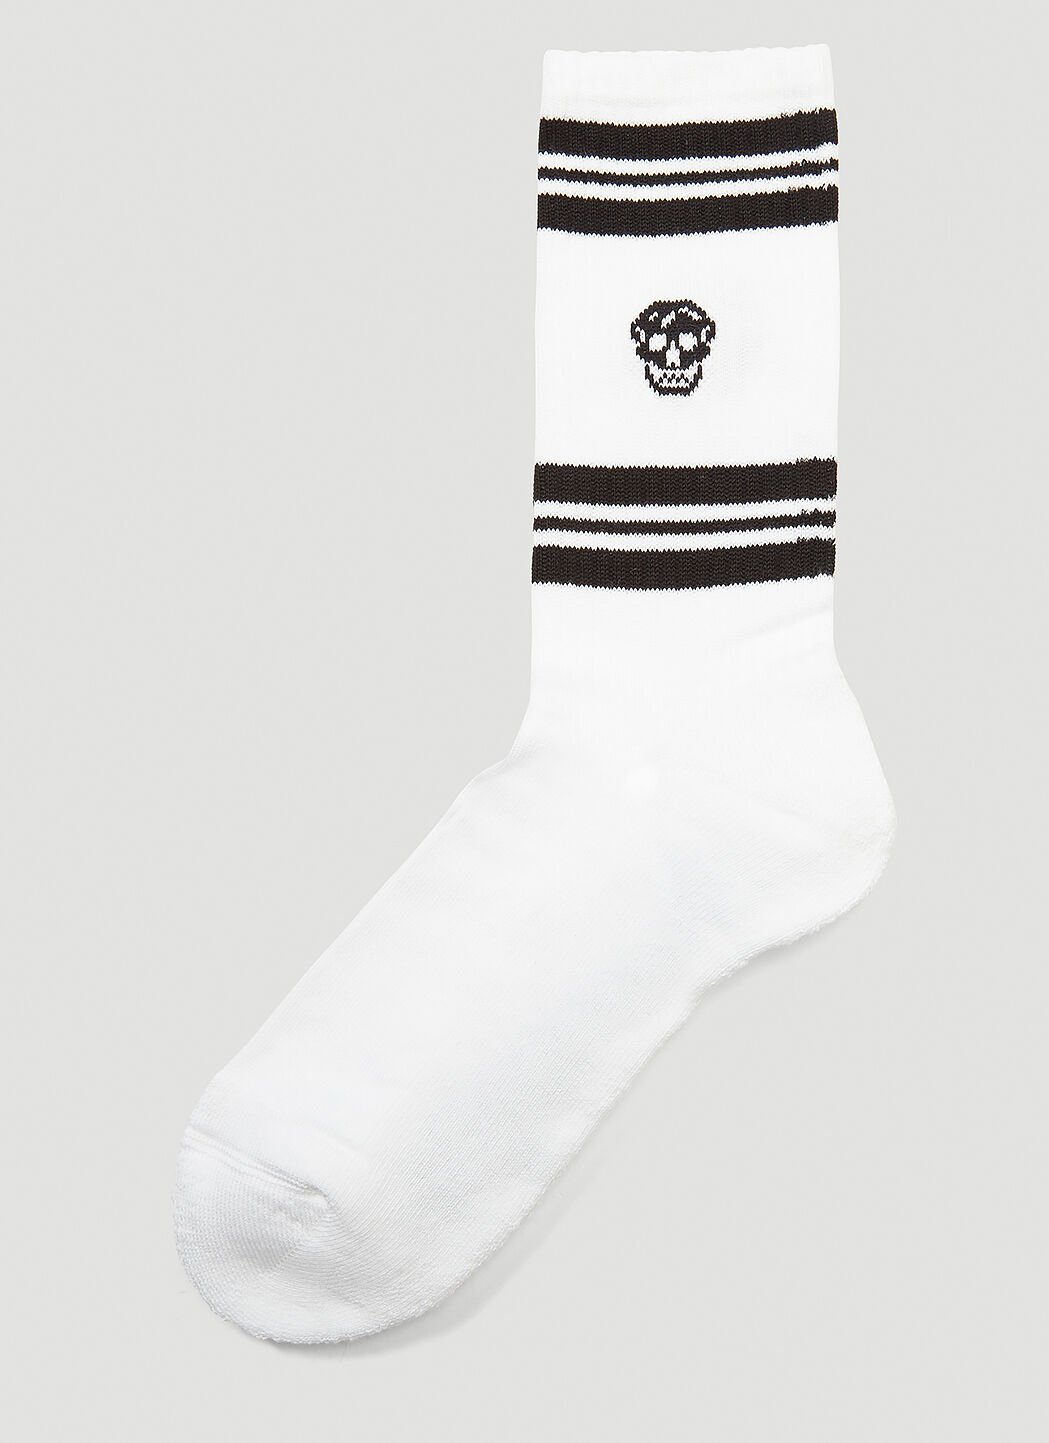 Saint Laurent Skull Socks Black sla0141037